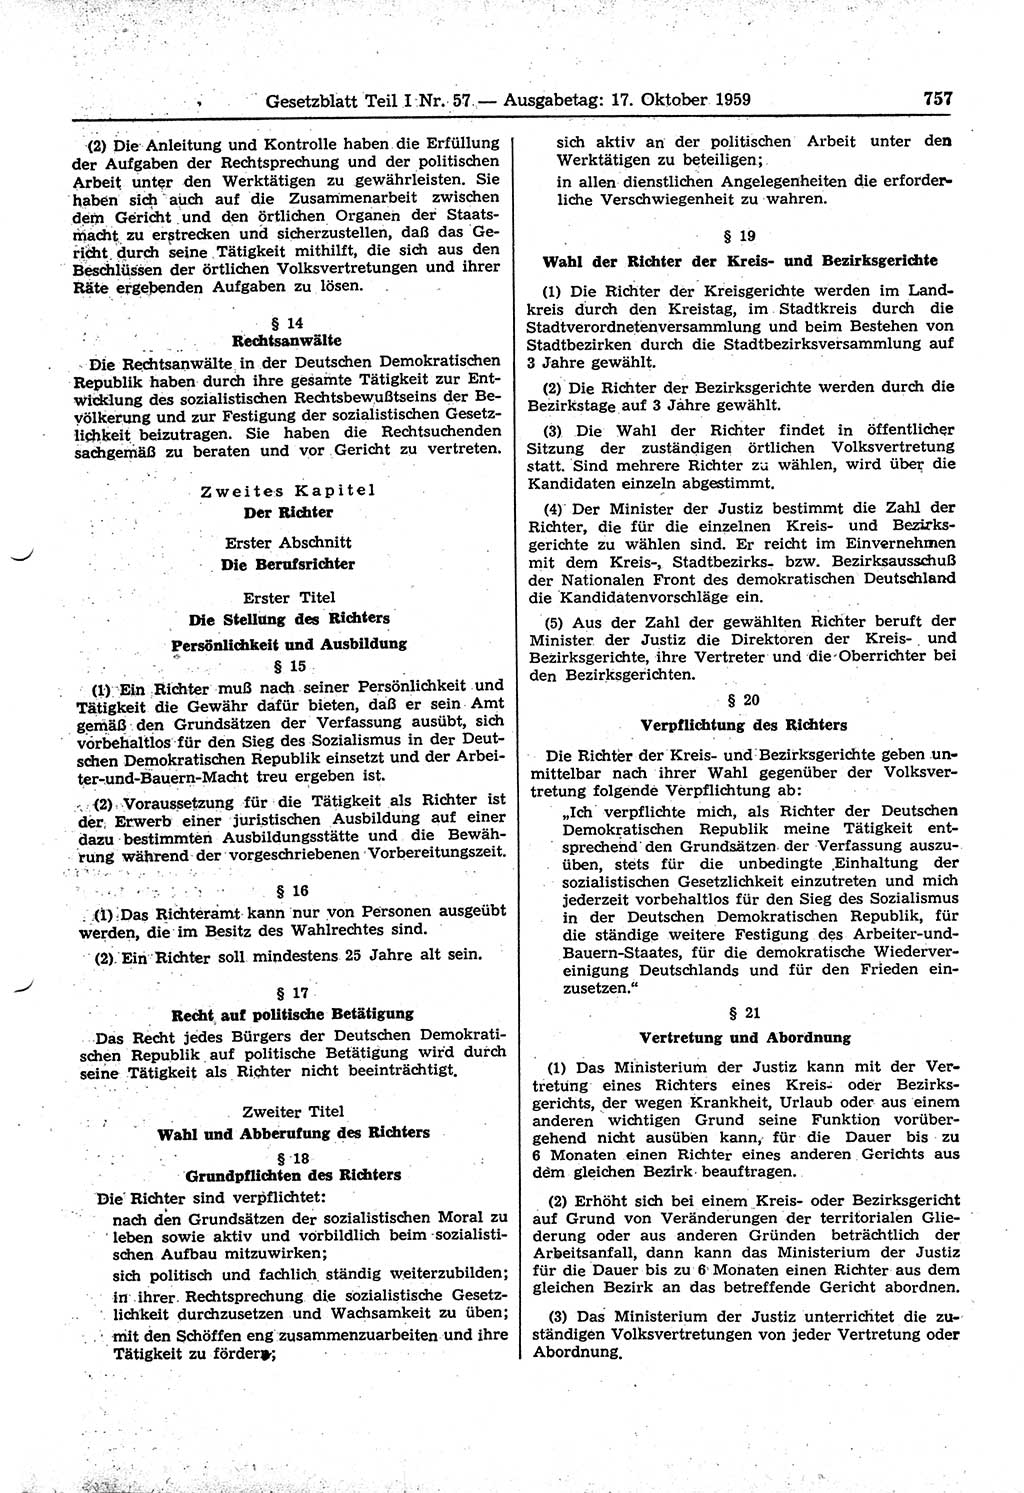 Gesetzblatt (GBl.) der Deutschen Demokratischen Republik (DDR) Teil Ⅰ 1959, Seite 757 (GBl. DDR Ⅰ 1959, S. 757)